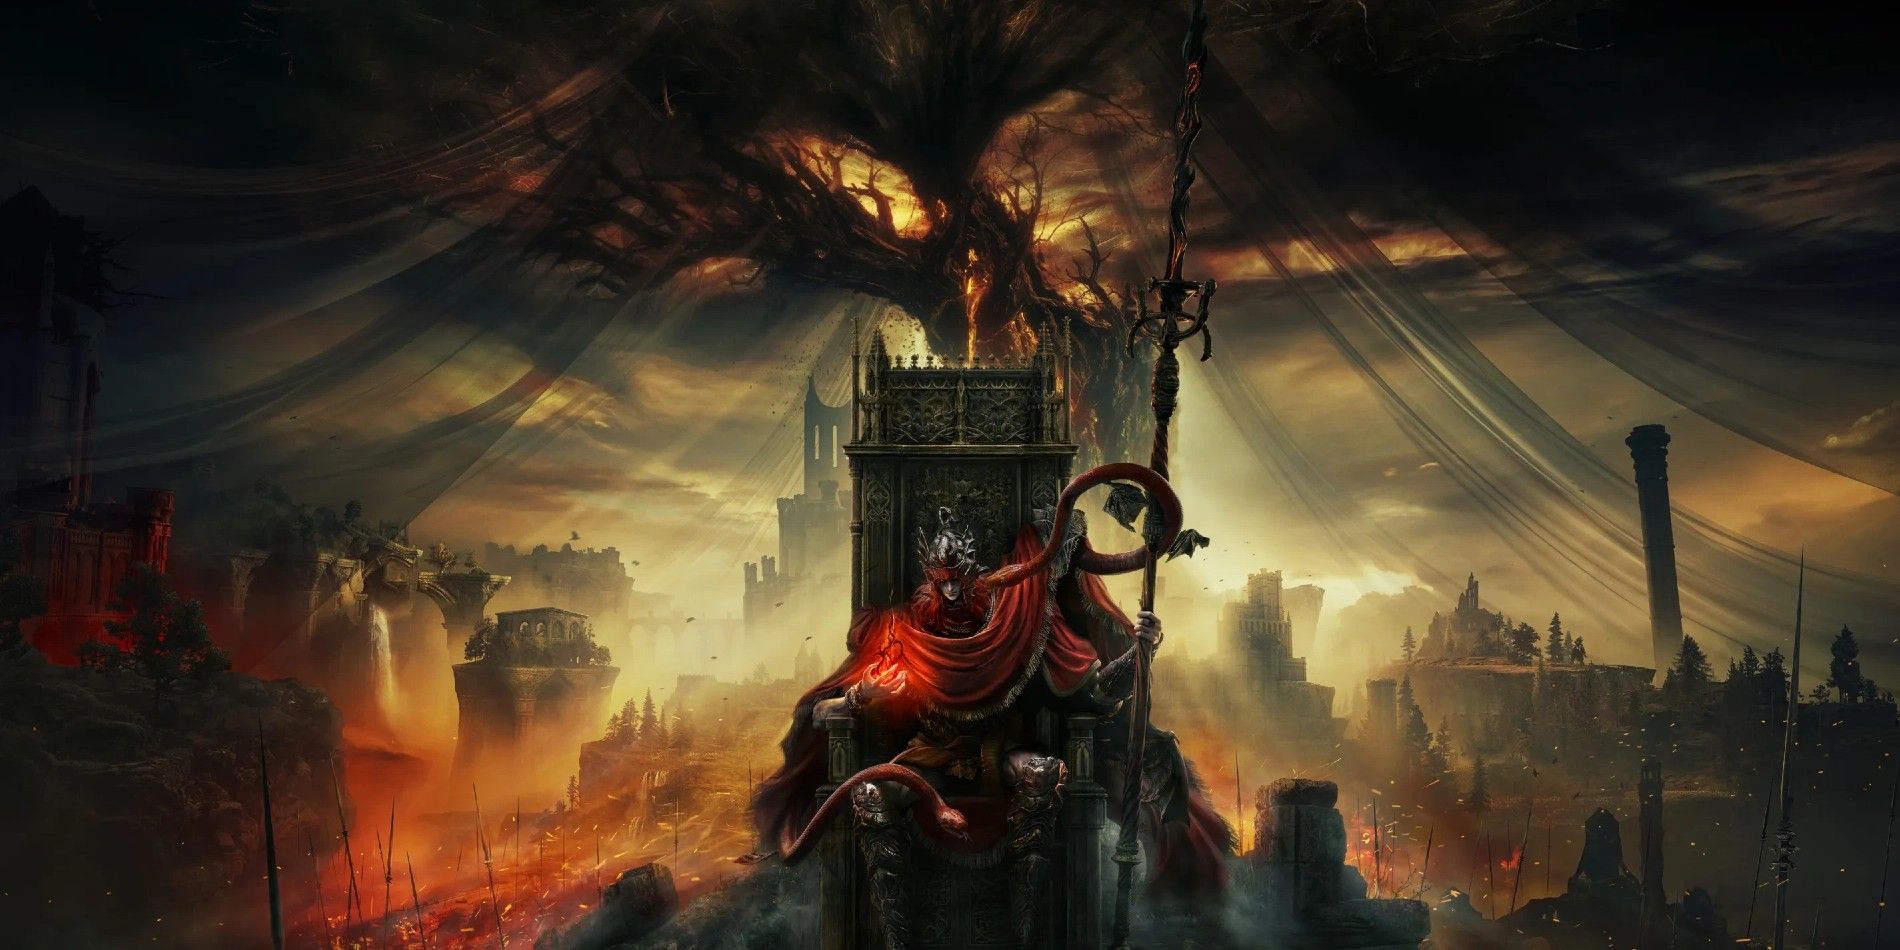 Uma imagem promocional do DLC Shadow of the Erdtree de Elden Ring apresentando Messmer, o Empalador, sentado em um trono.